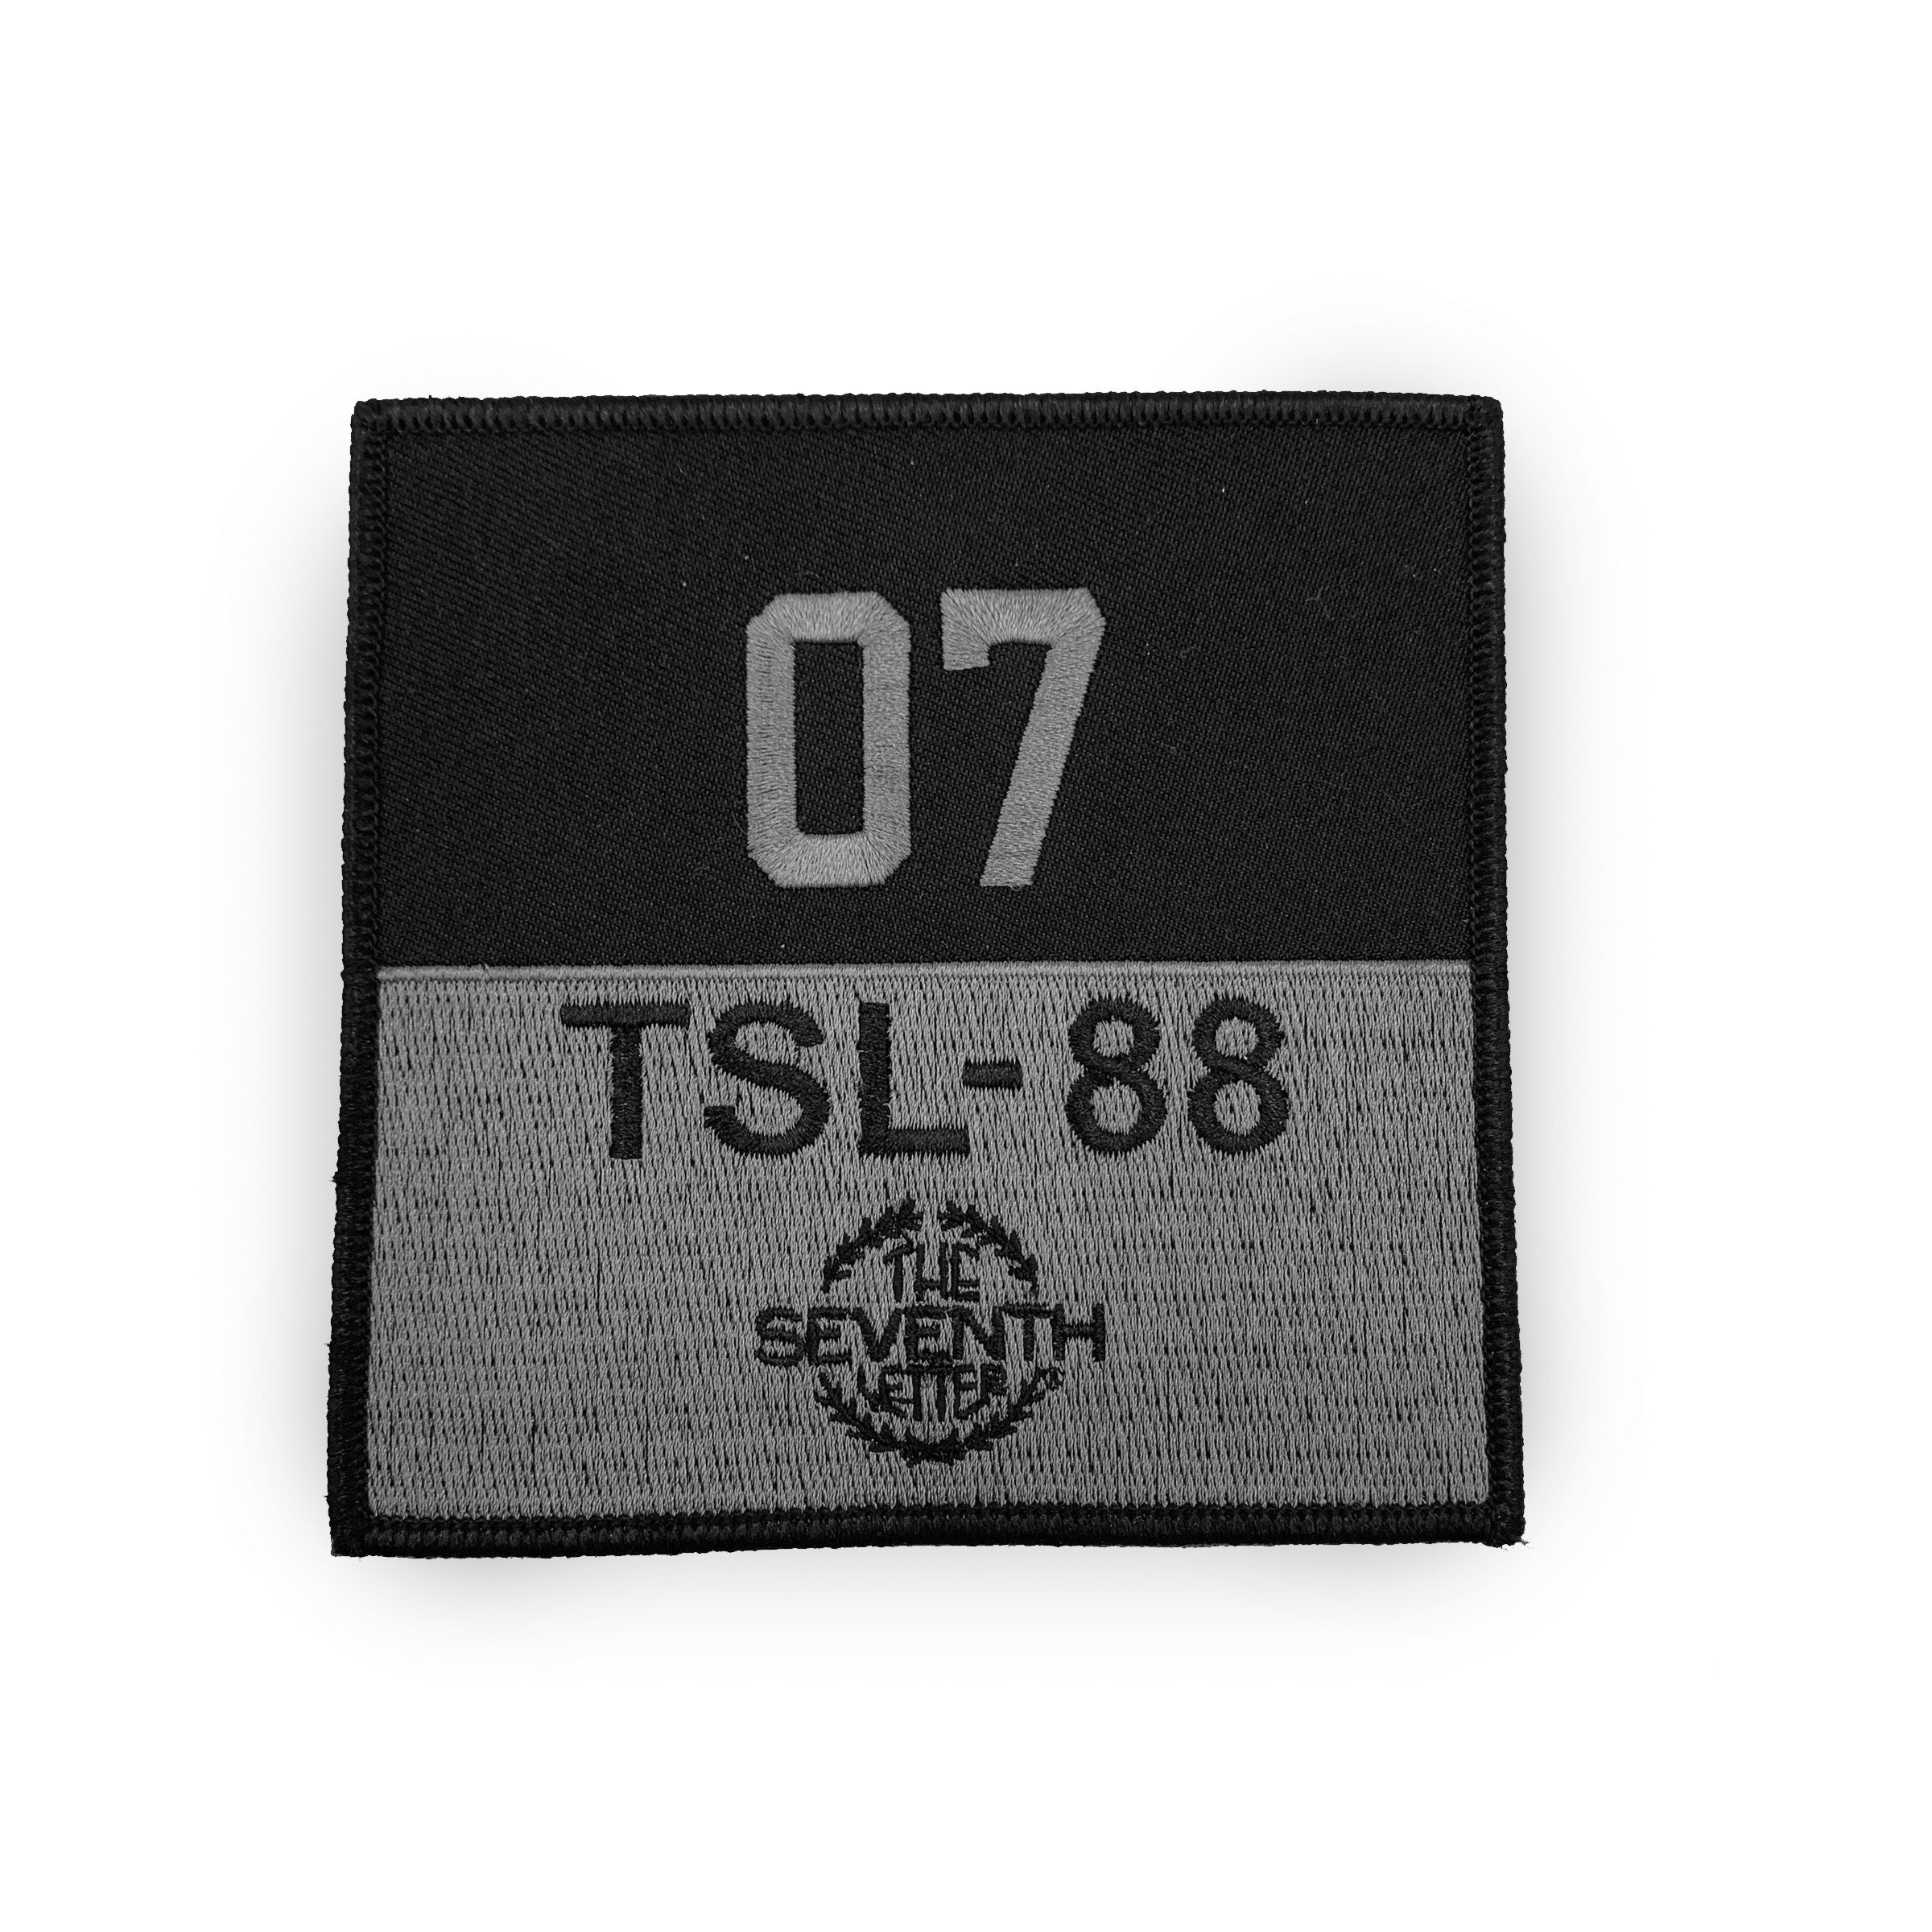 TSL EST. 1988